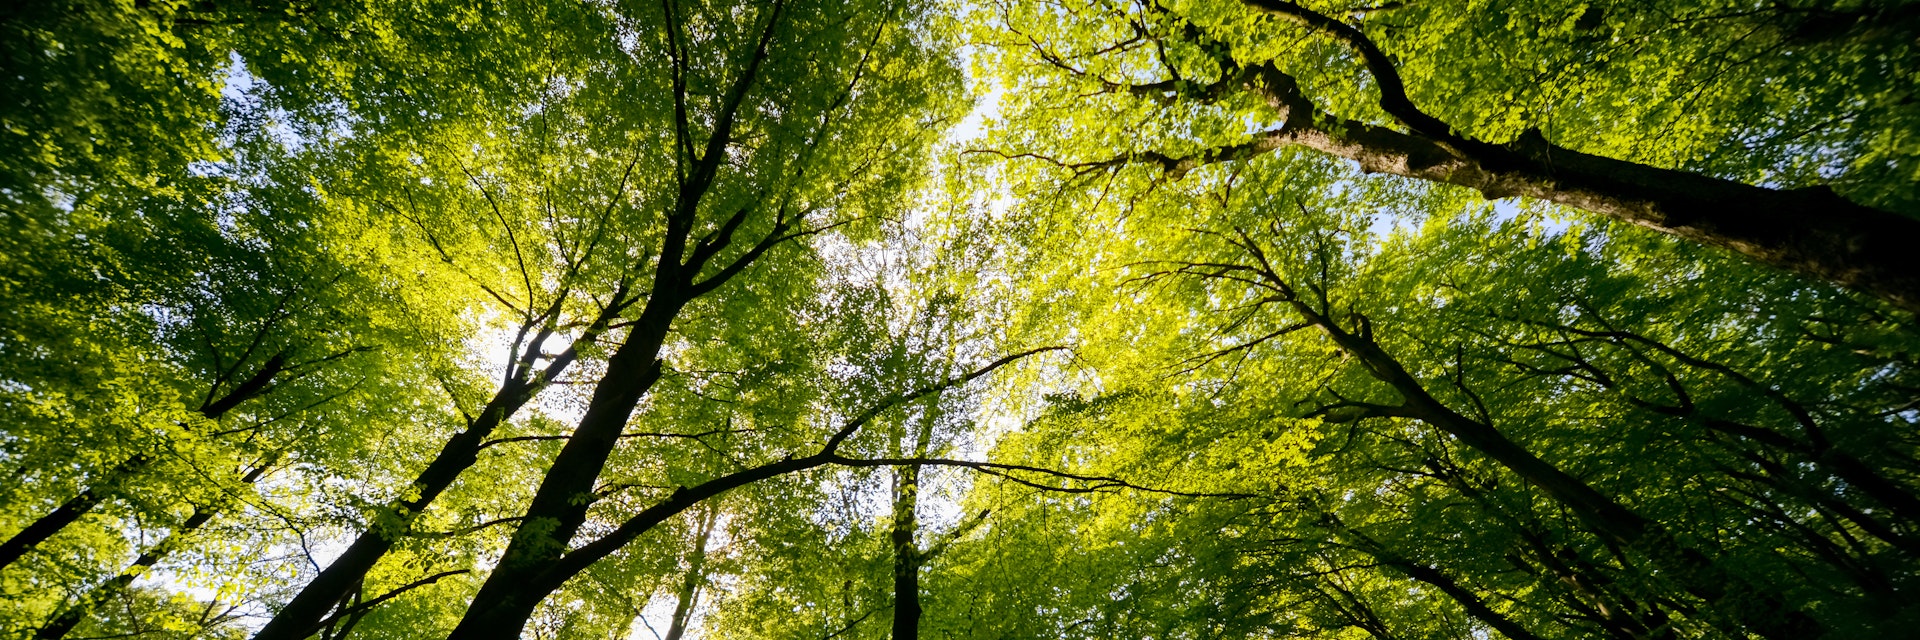 Treetops of beech and oak trees in a forest near Göttingen.